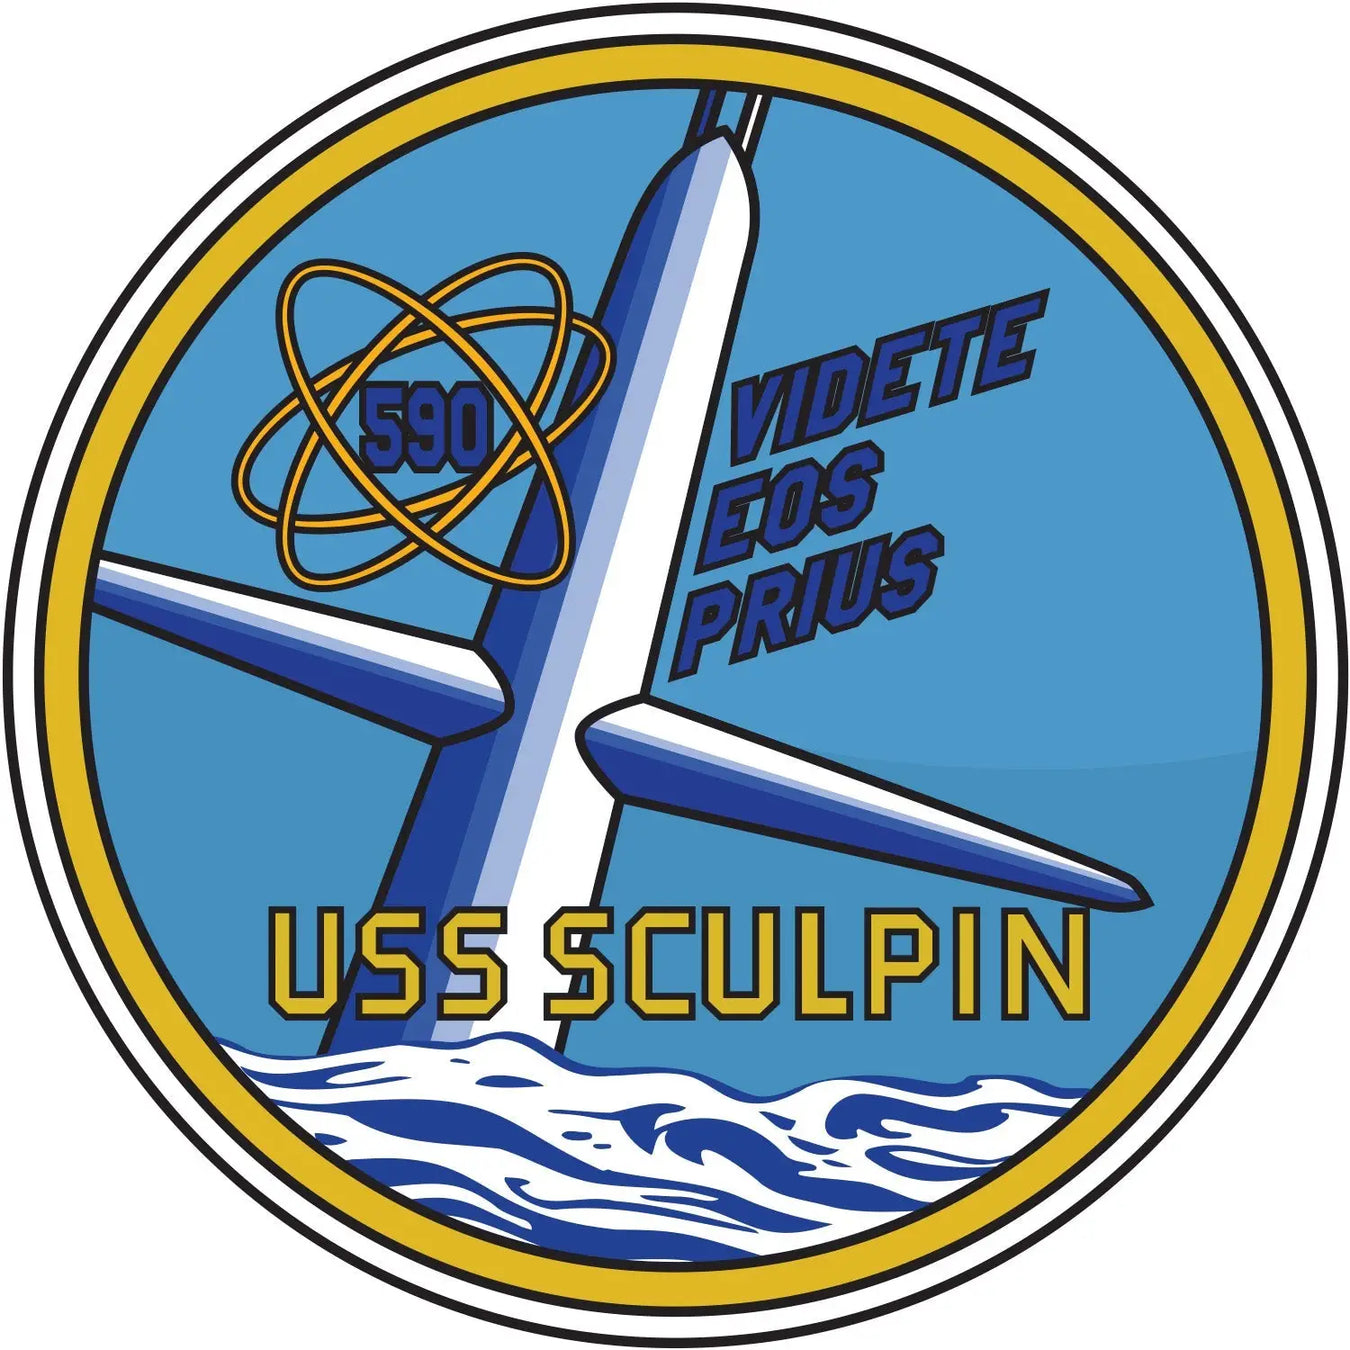 USS Sculpin (SSN-590)